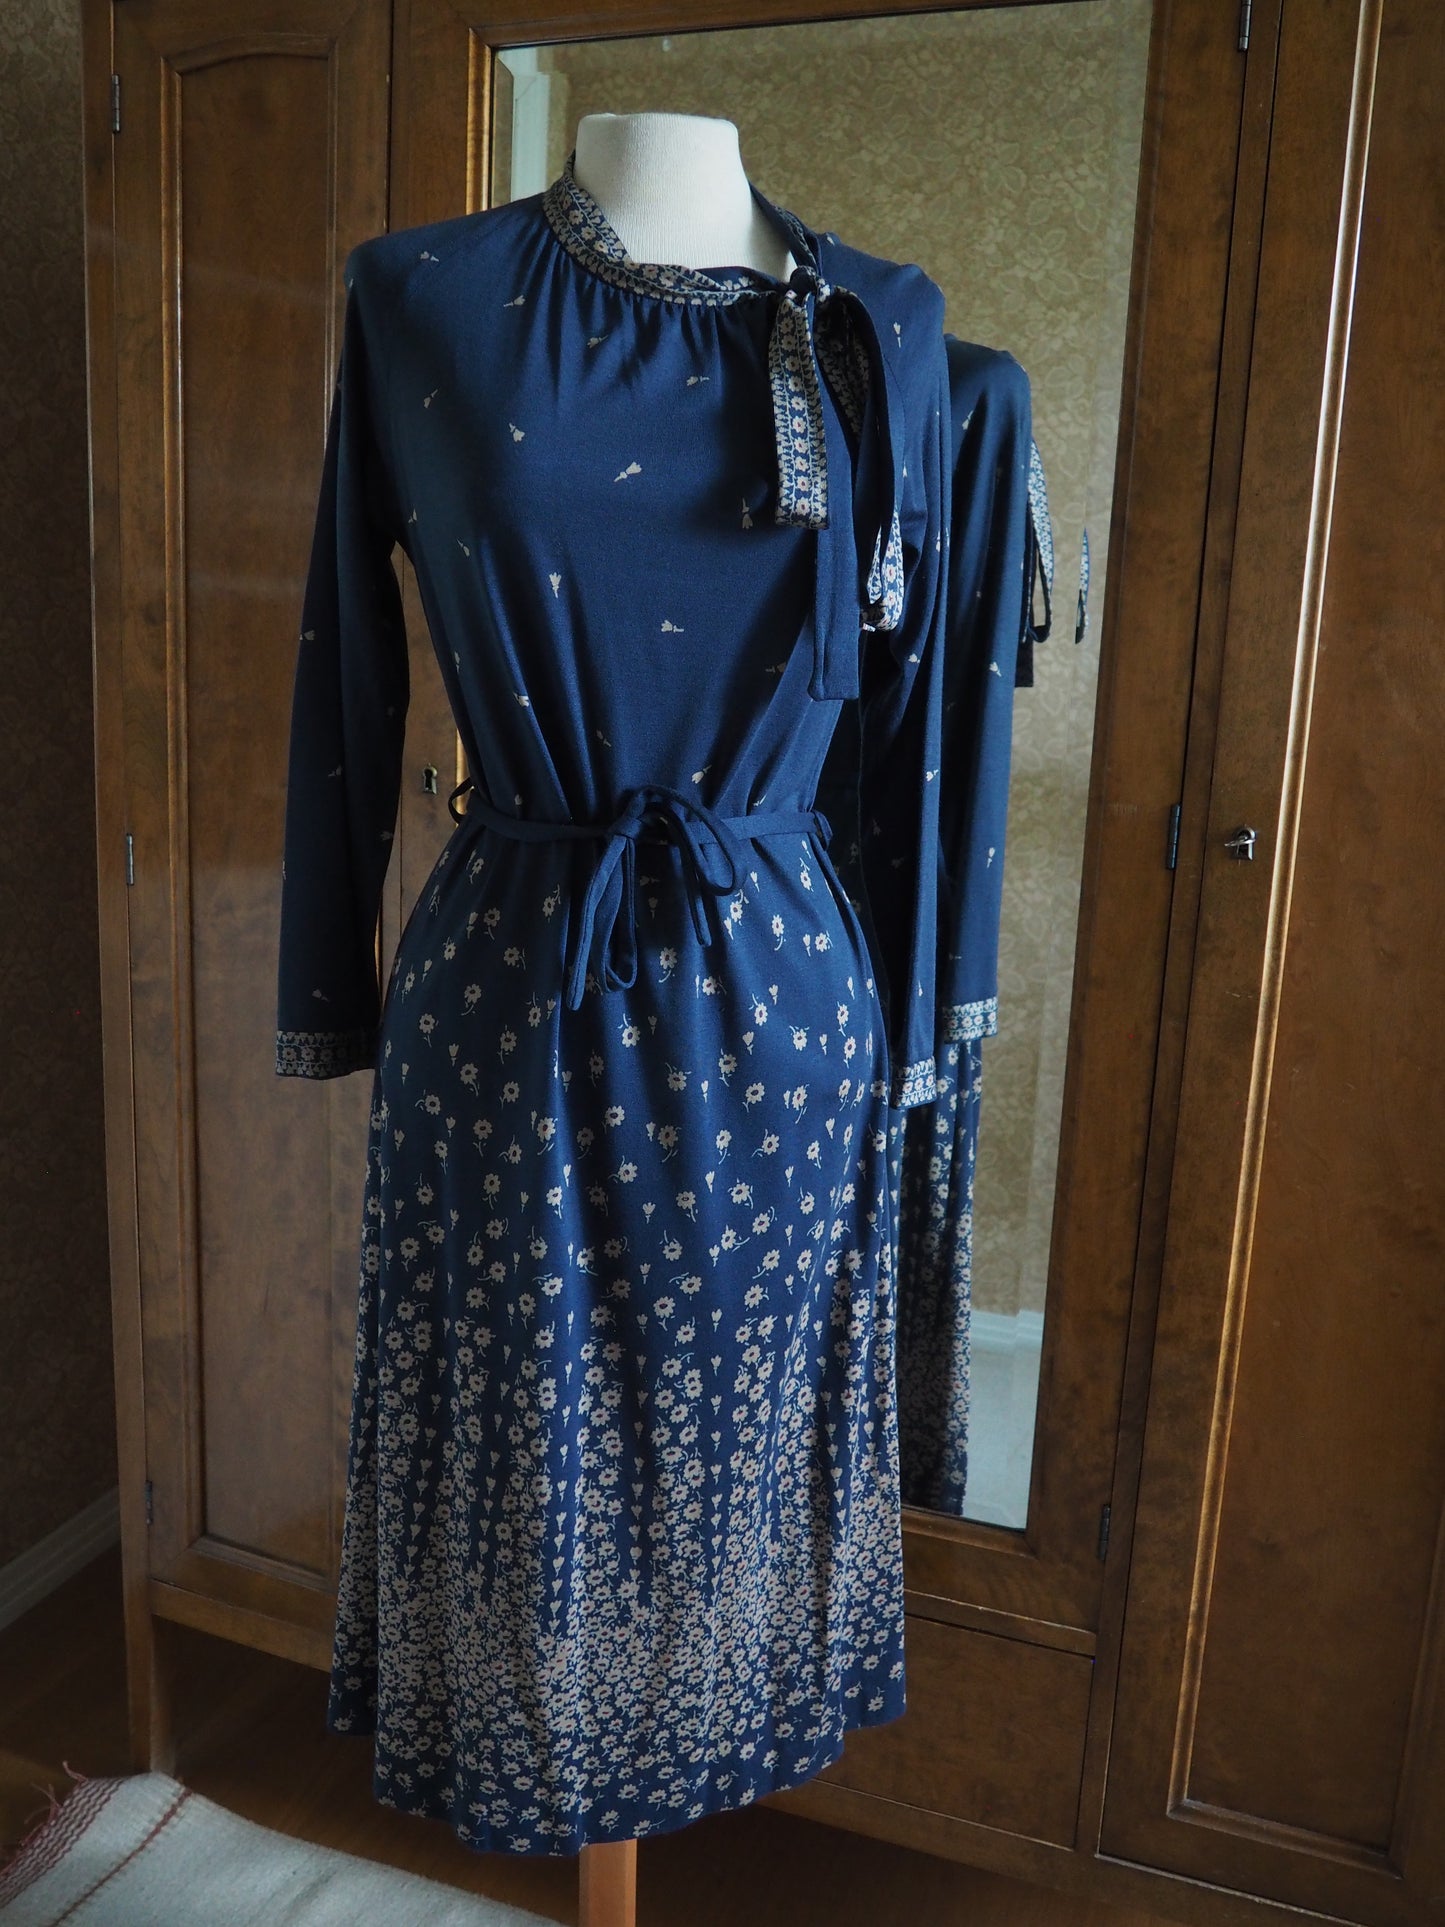 Tummansininen kukkakuviollinen Mekkomarjan mekko, käyttämätöntä vanhaa varastoa